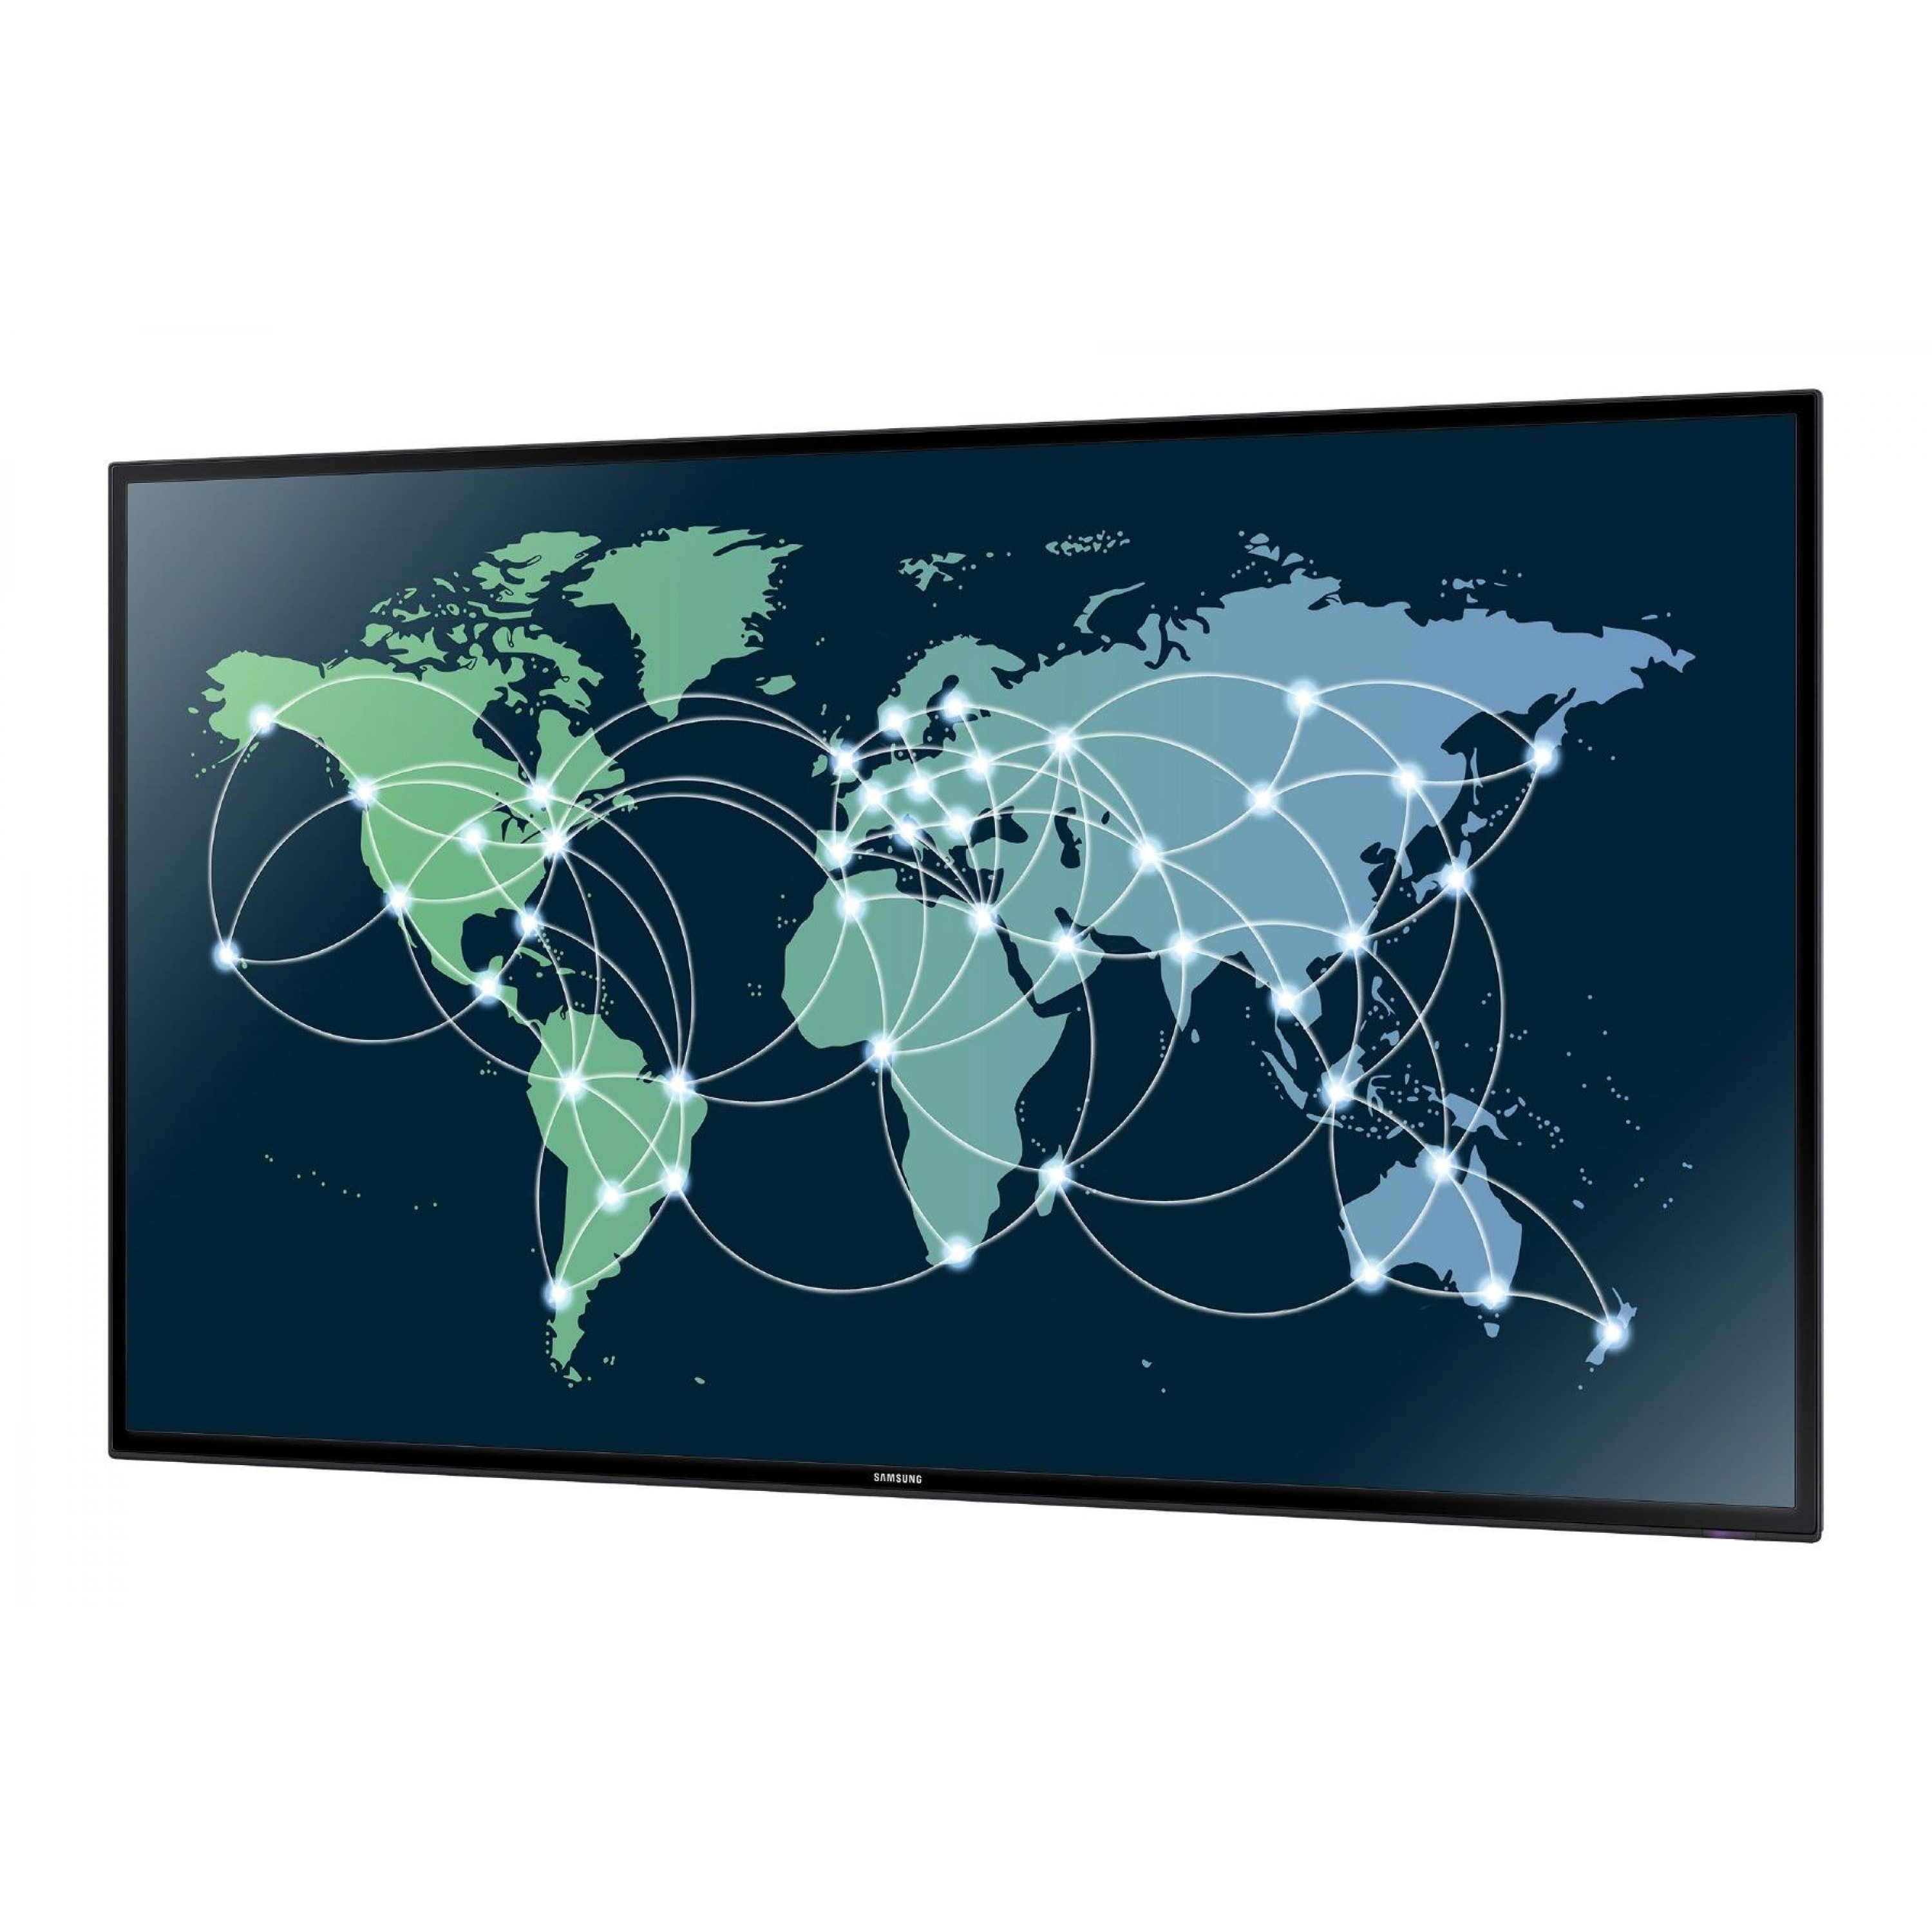 Российская связь интернет. Всемирная сеть на мировой карте. Карта глобального интернета. Мировая сеть интернет карта.